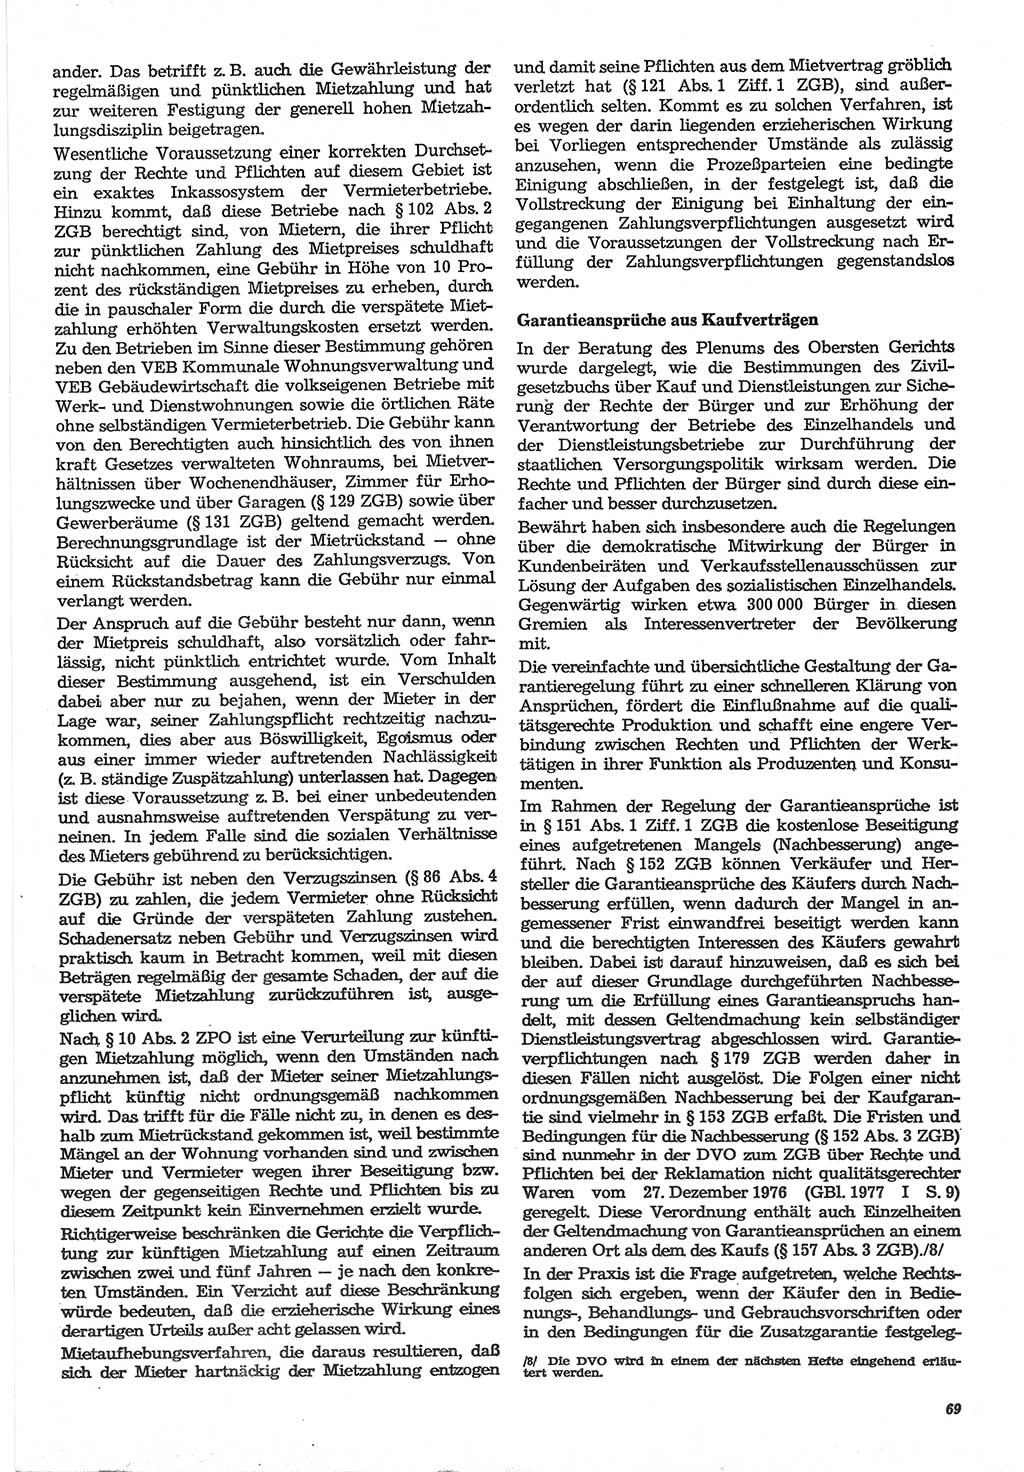 Neue Justiz (NJ), Zeitschrift für Recht und Rechtswissenschaft-Zeitschrift, sozialistisches Recht und Gesetzlichkeit, 31. Jahrgang 1977, Seite 69 (NJ DDR 1977, S. 69)